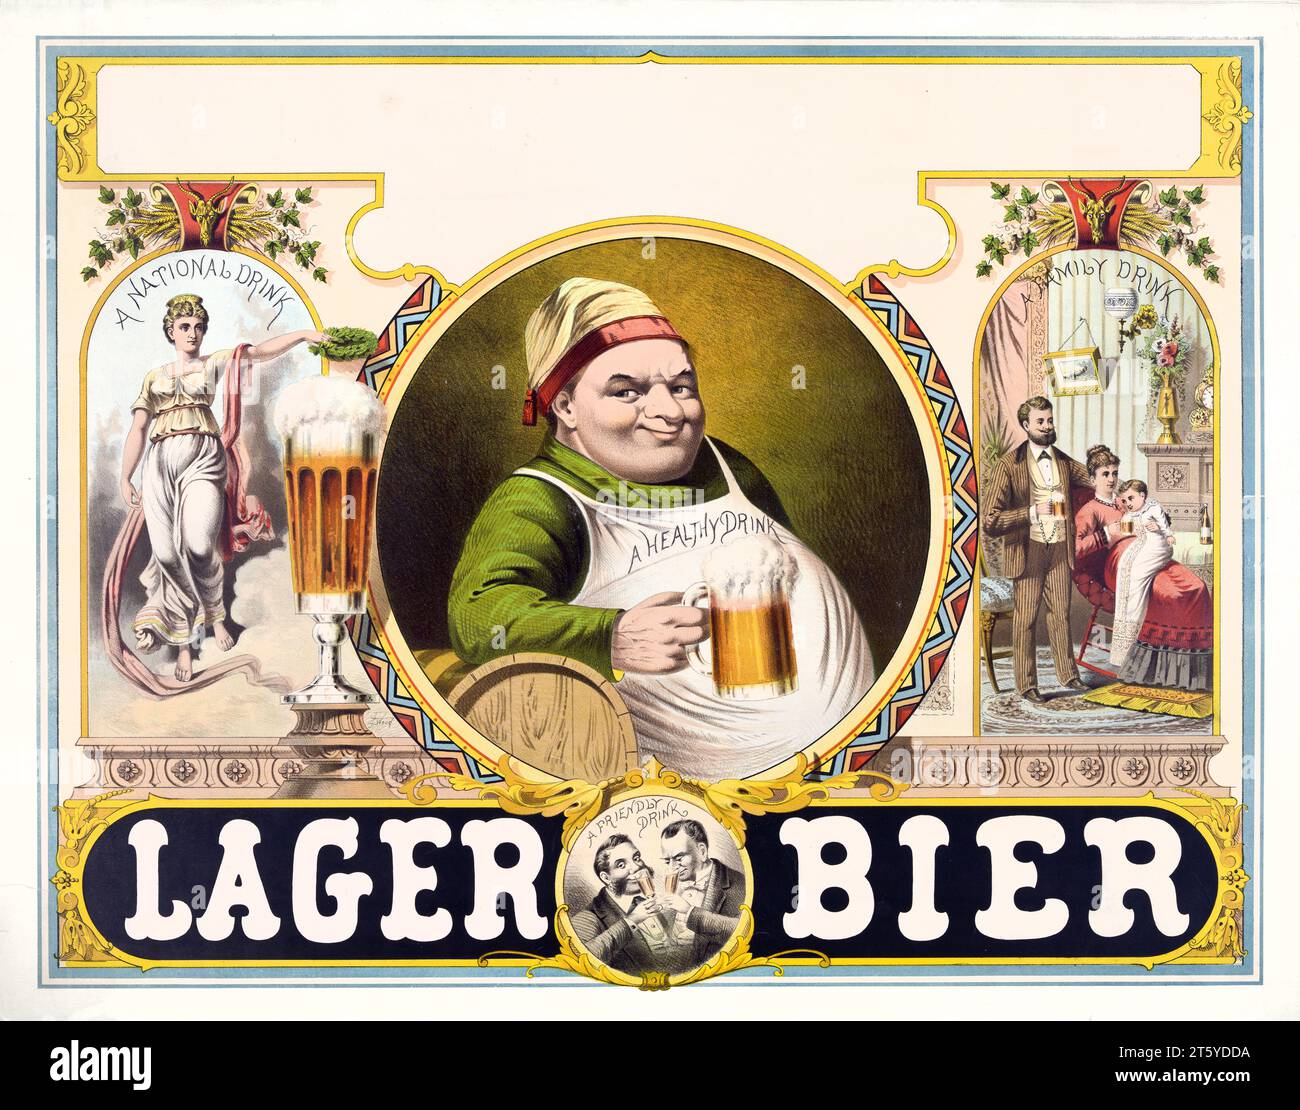 Vecchia illustrazione pubblicitaria di Lager Bier. Da autore non identificato, publ. ca. 1879 Foto Stock